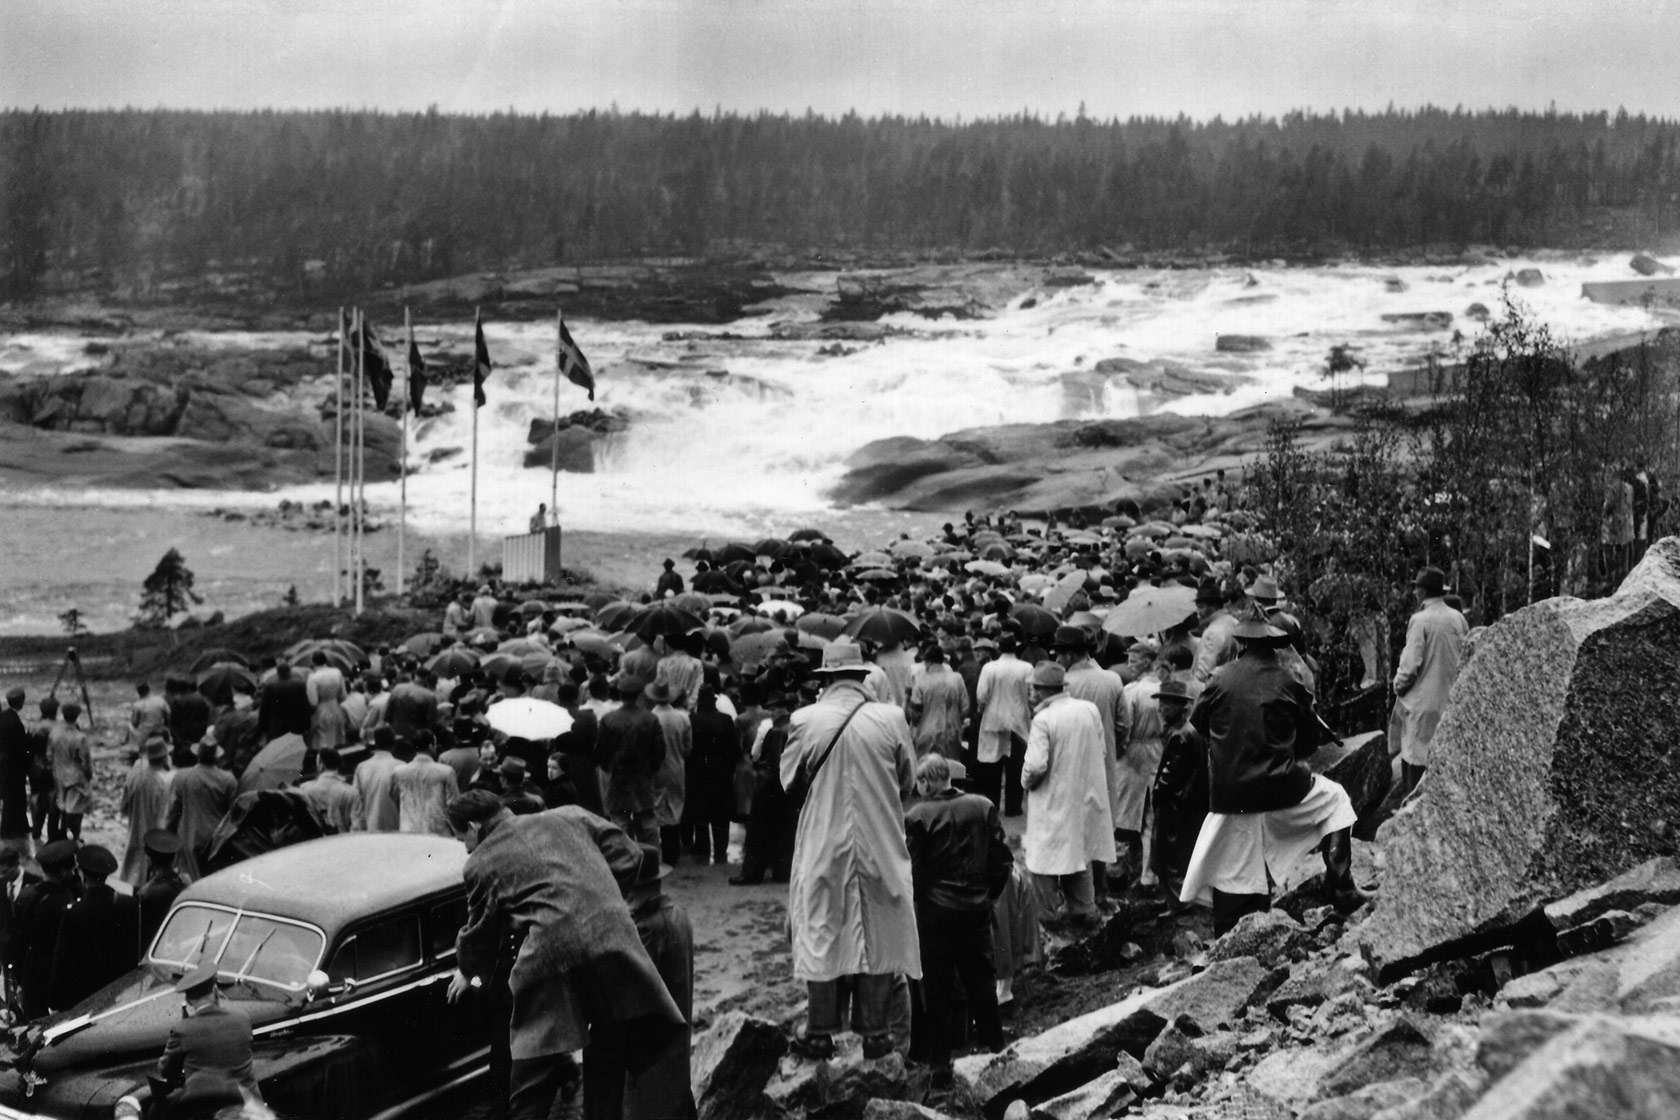 Personnes rassemblées pour l’ouverture de la centrale hydroélectrique de Harsprånget en Suède, 1952